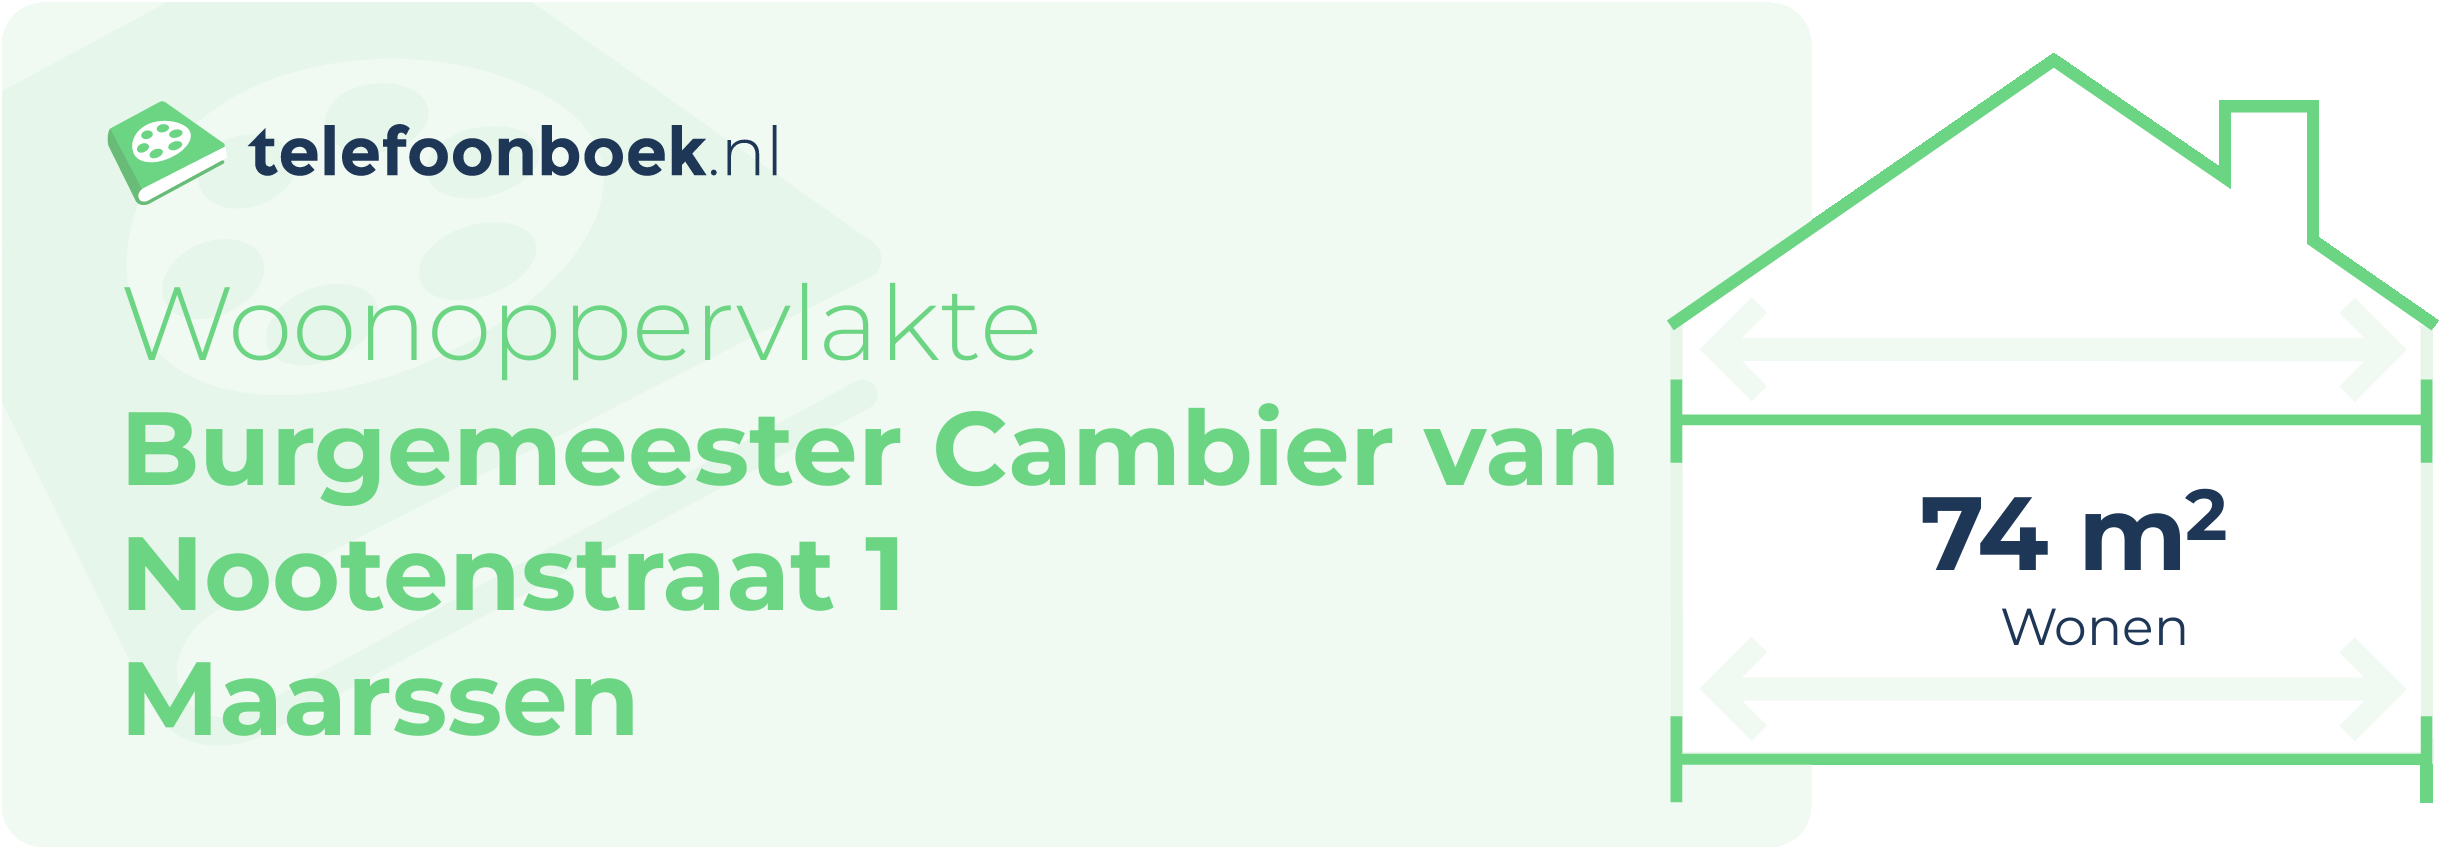 Woonoppervlakte Burgemeester Cambier Van Nootenstraat 1 Maarssen